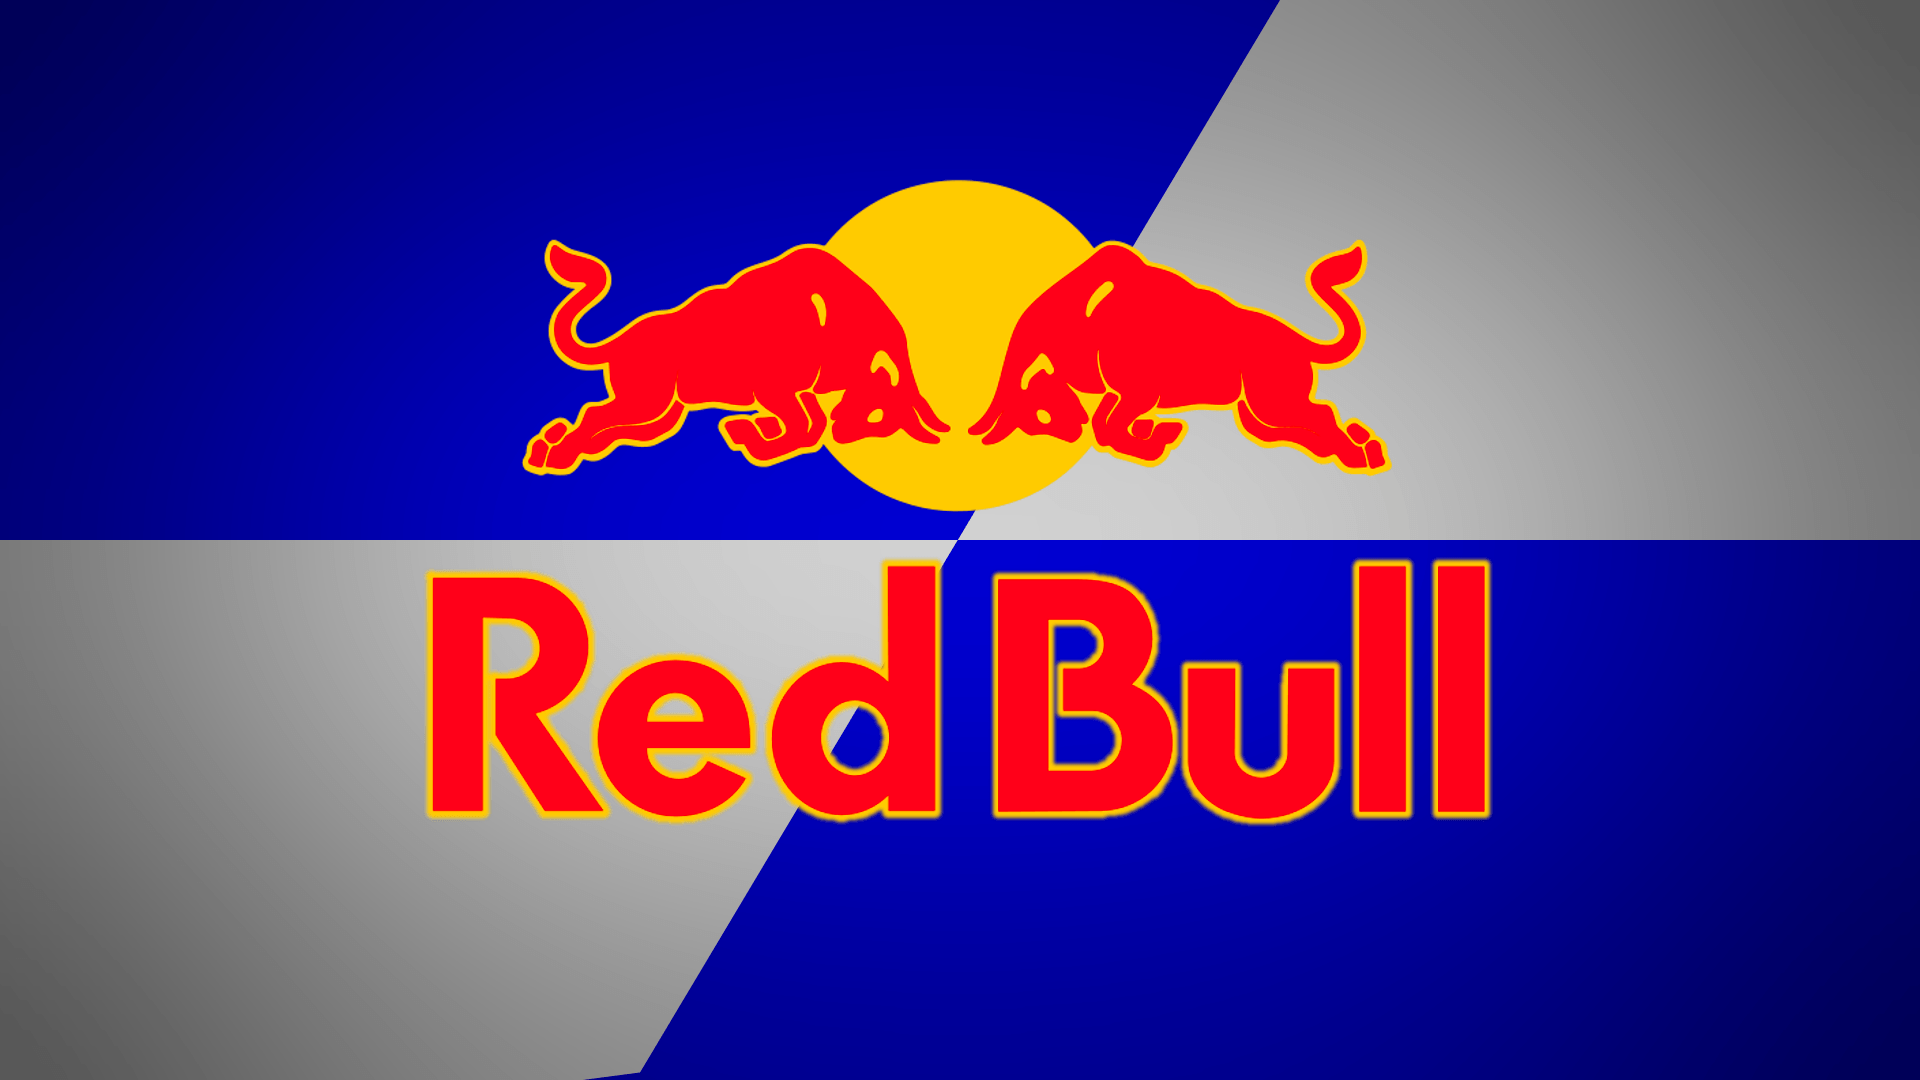 Wallpaper.wiki Red Bull Logo Wallpaper PIC WPD005164